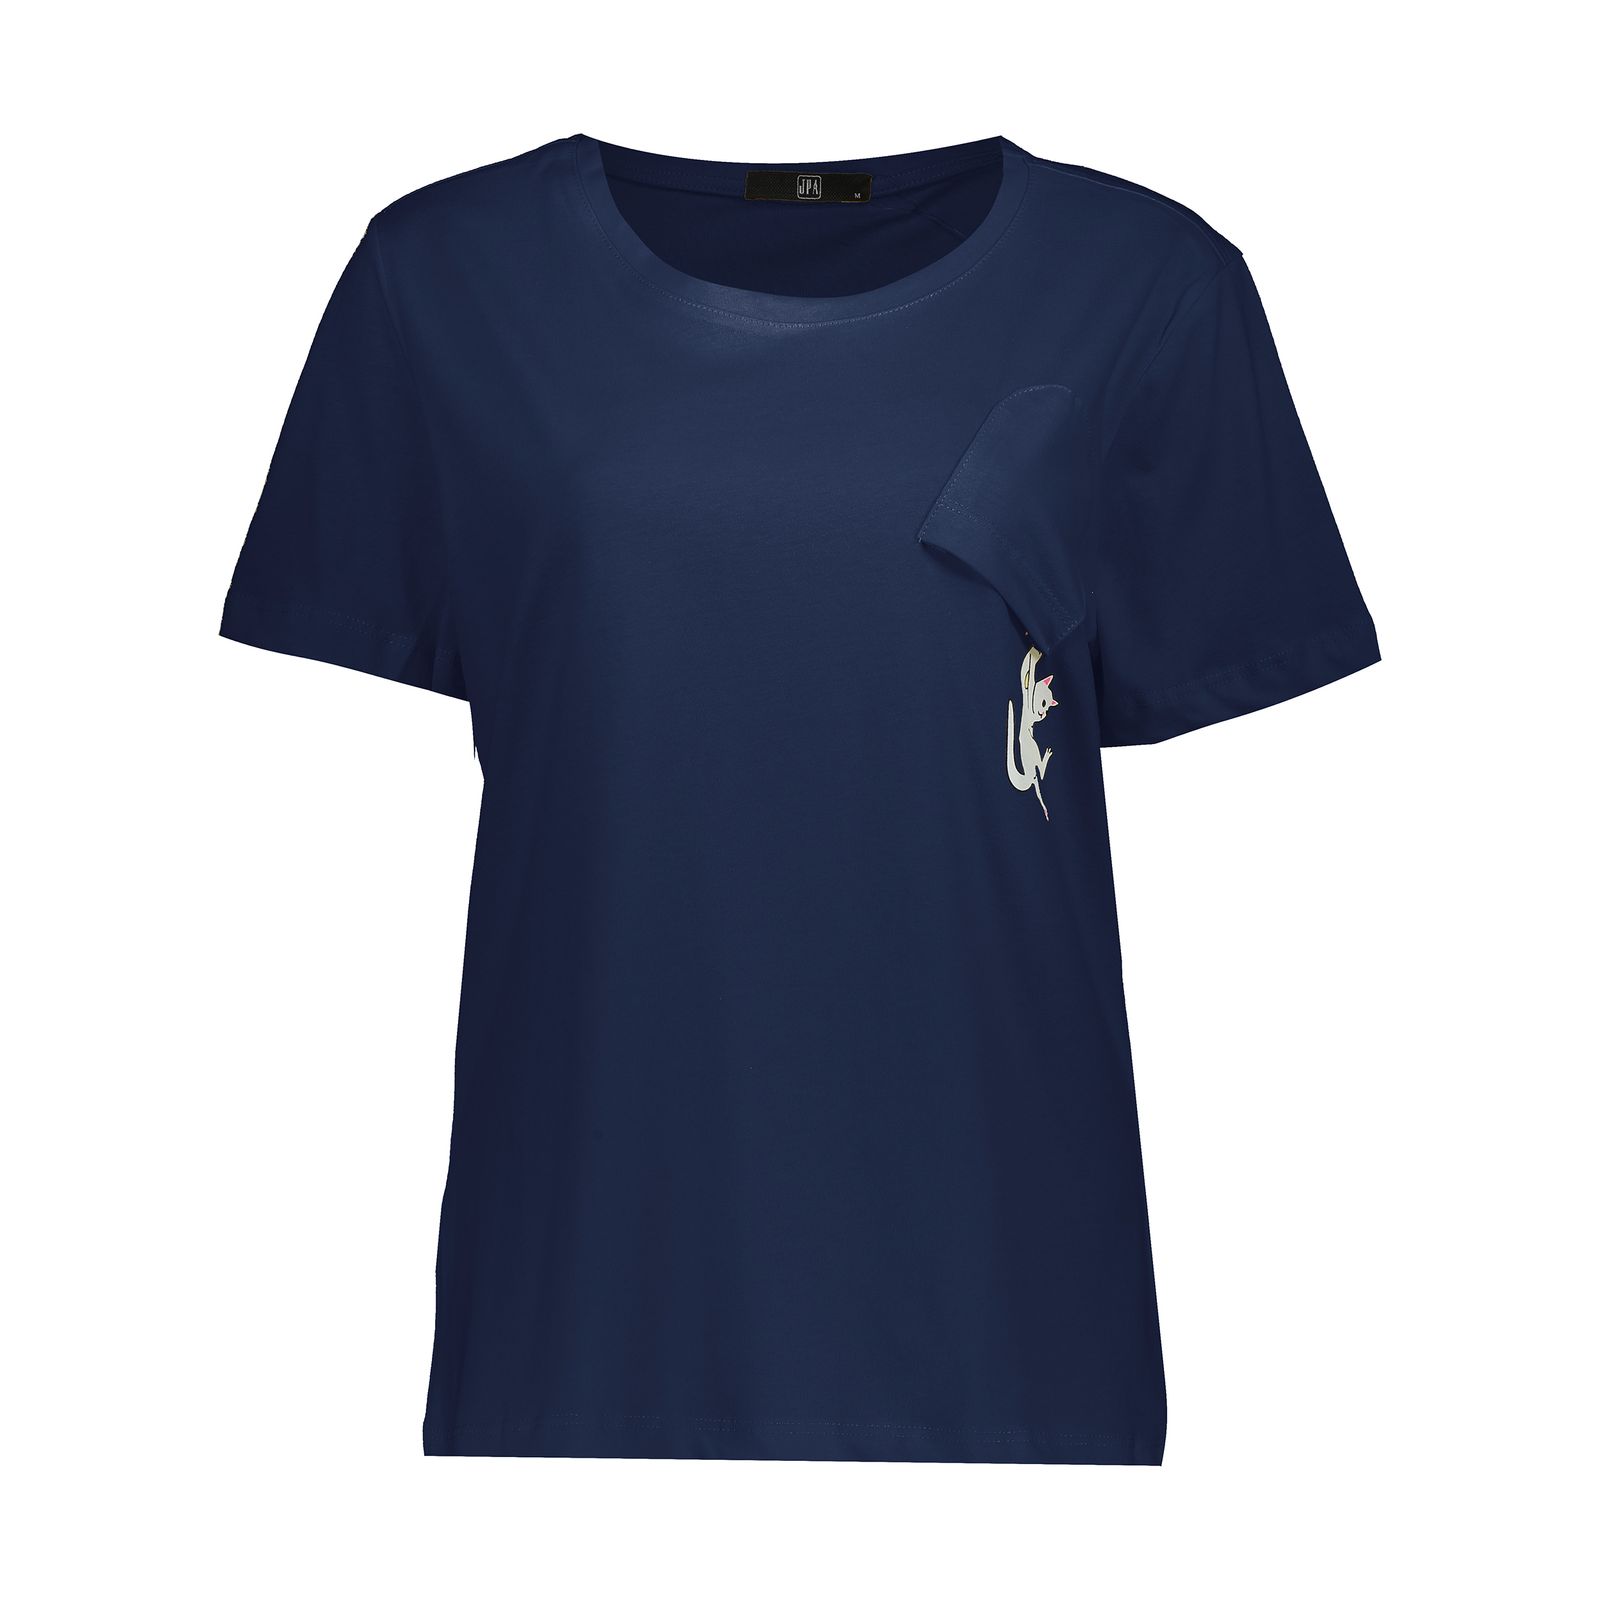 تی شرت زنانه جامه پوش آرا مدل 4012018382-59 -  - 1